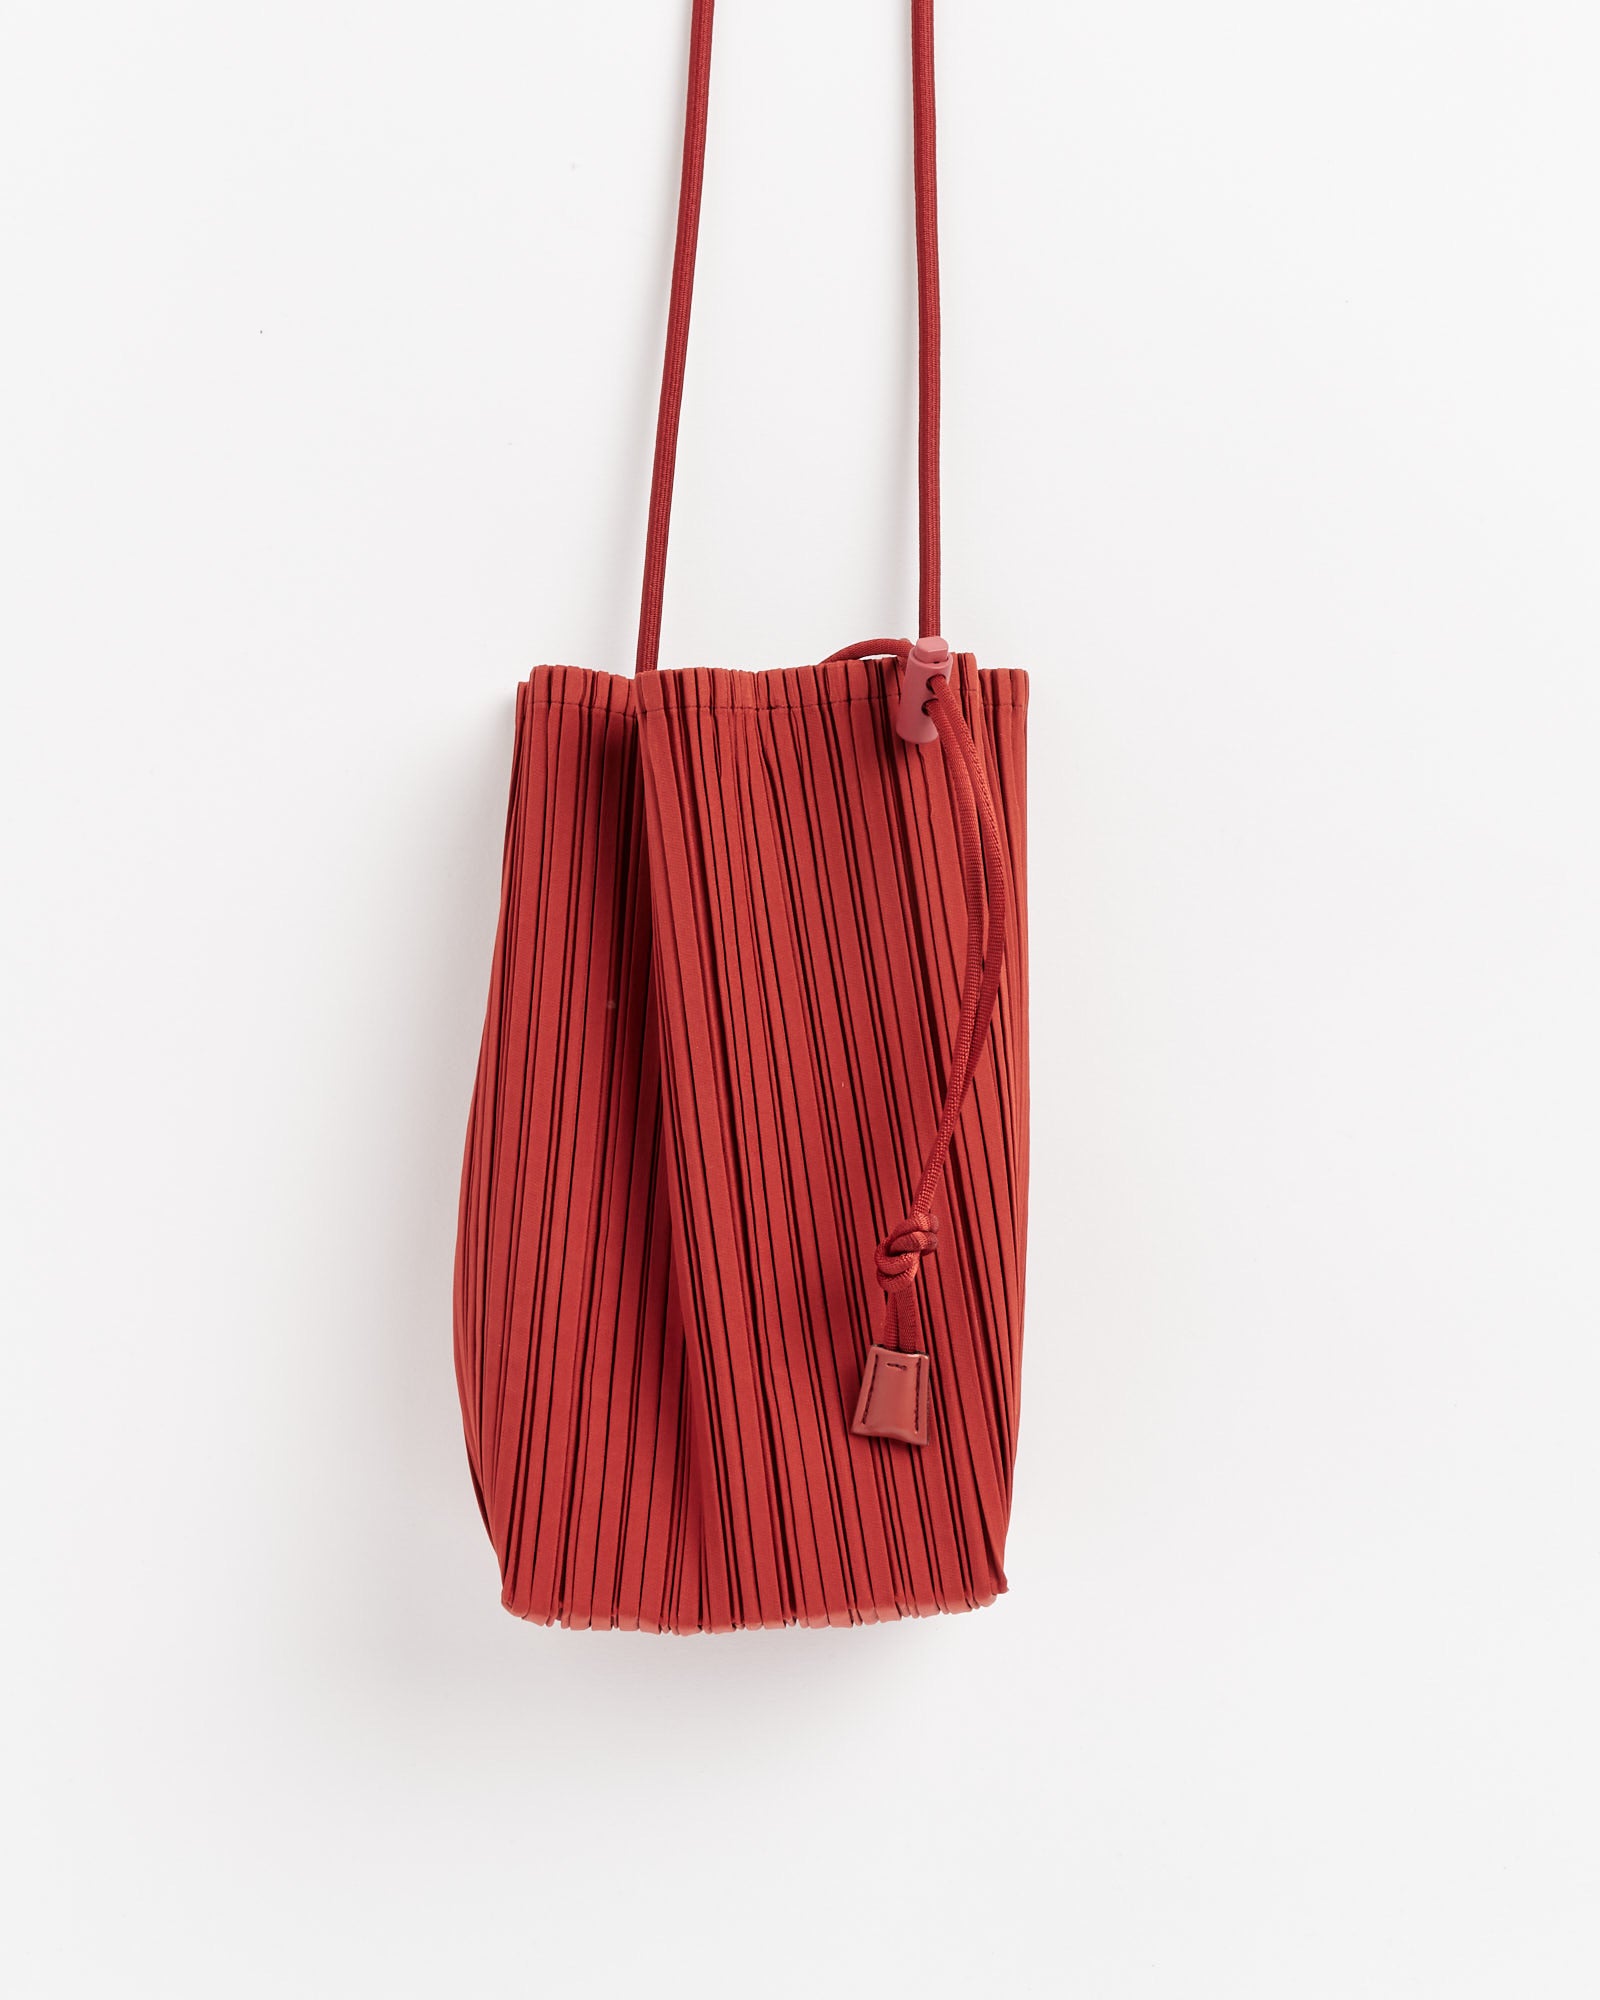 Bloom Bag in Dark Red